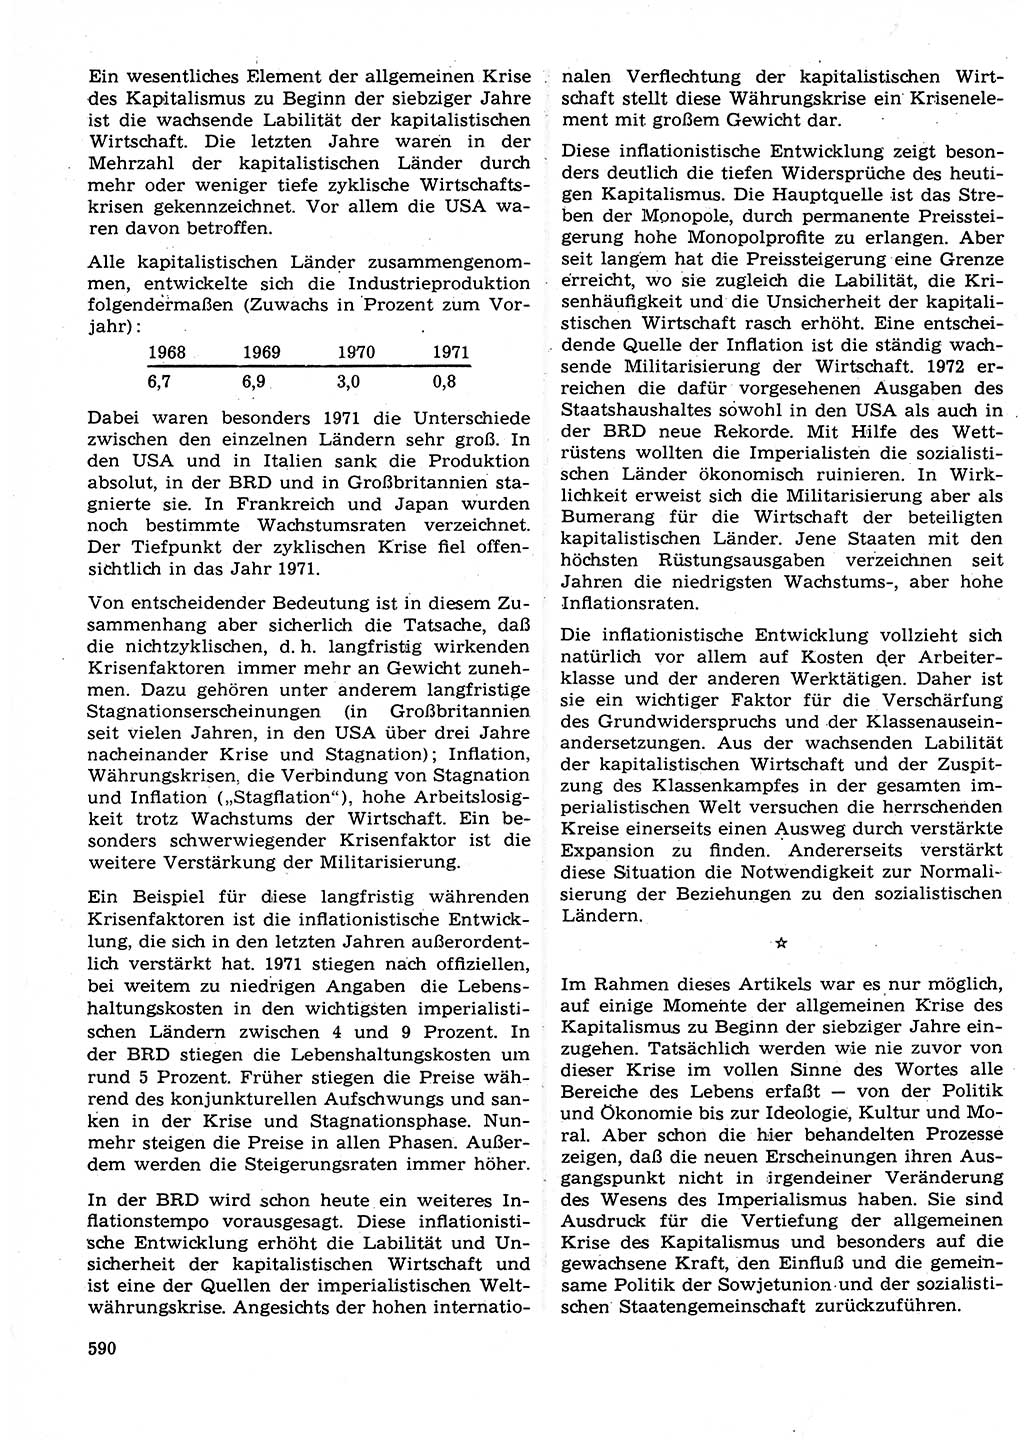 Neuer Weg (NW), Organ des Zentralkomitees (ZK) der SED (Sozialistische Einheitspartei Deutschlands) für Fragen des Parteilebens, 27. Jahrgang [Deutsche Demokratische Republik (DDR)] 1972, Seite 590 (NW ZK SED DDR 1972, S. 590)